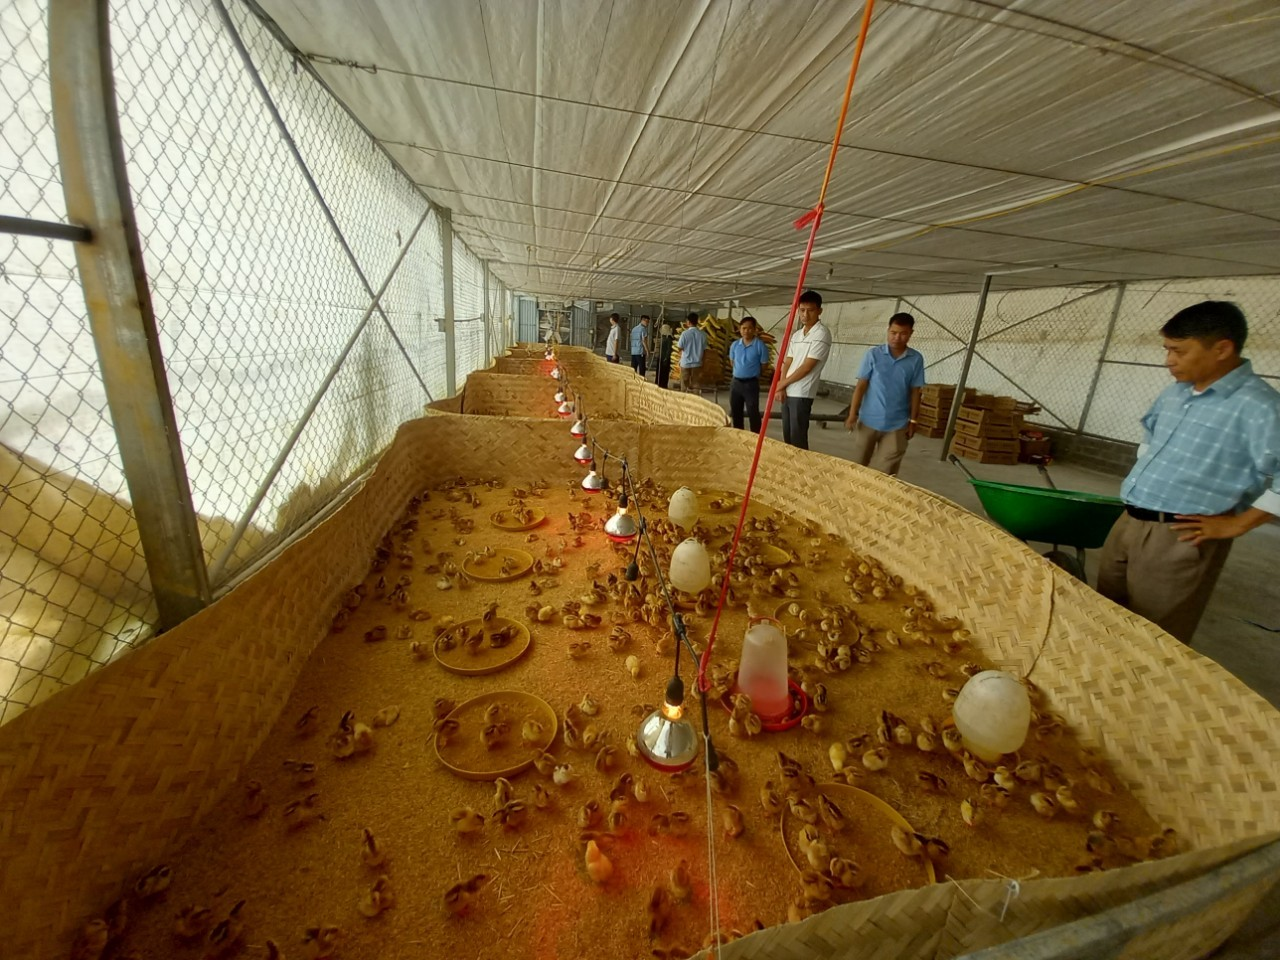 Trung tâm Khuyến nông tỉnh Nghệ An tổ chức cấp giống gà Hồ lai (01 ngày tuổi) và thức ăn hỗn hợp để thực hiện mô hình.